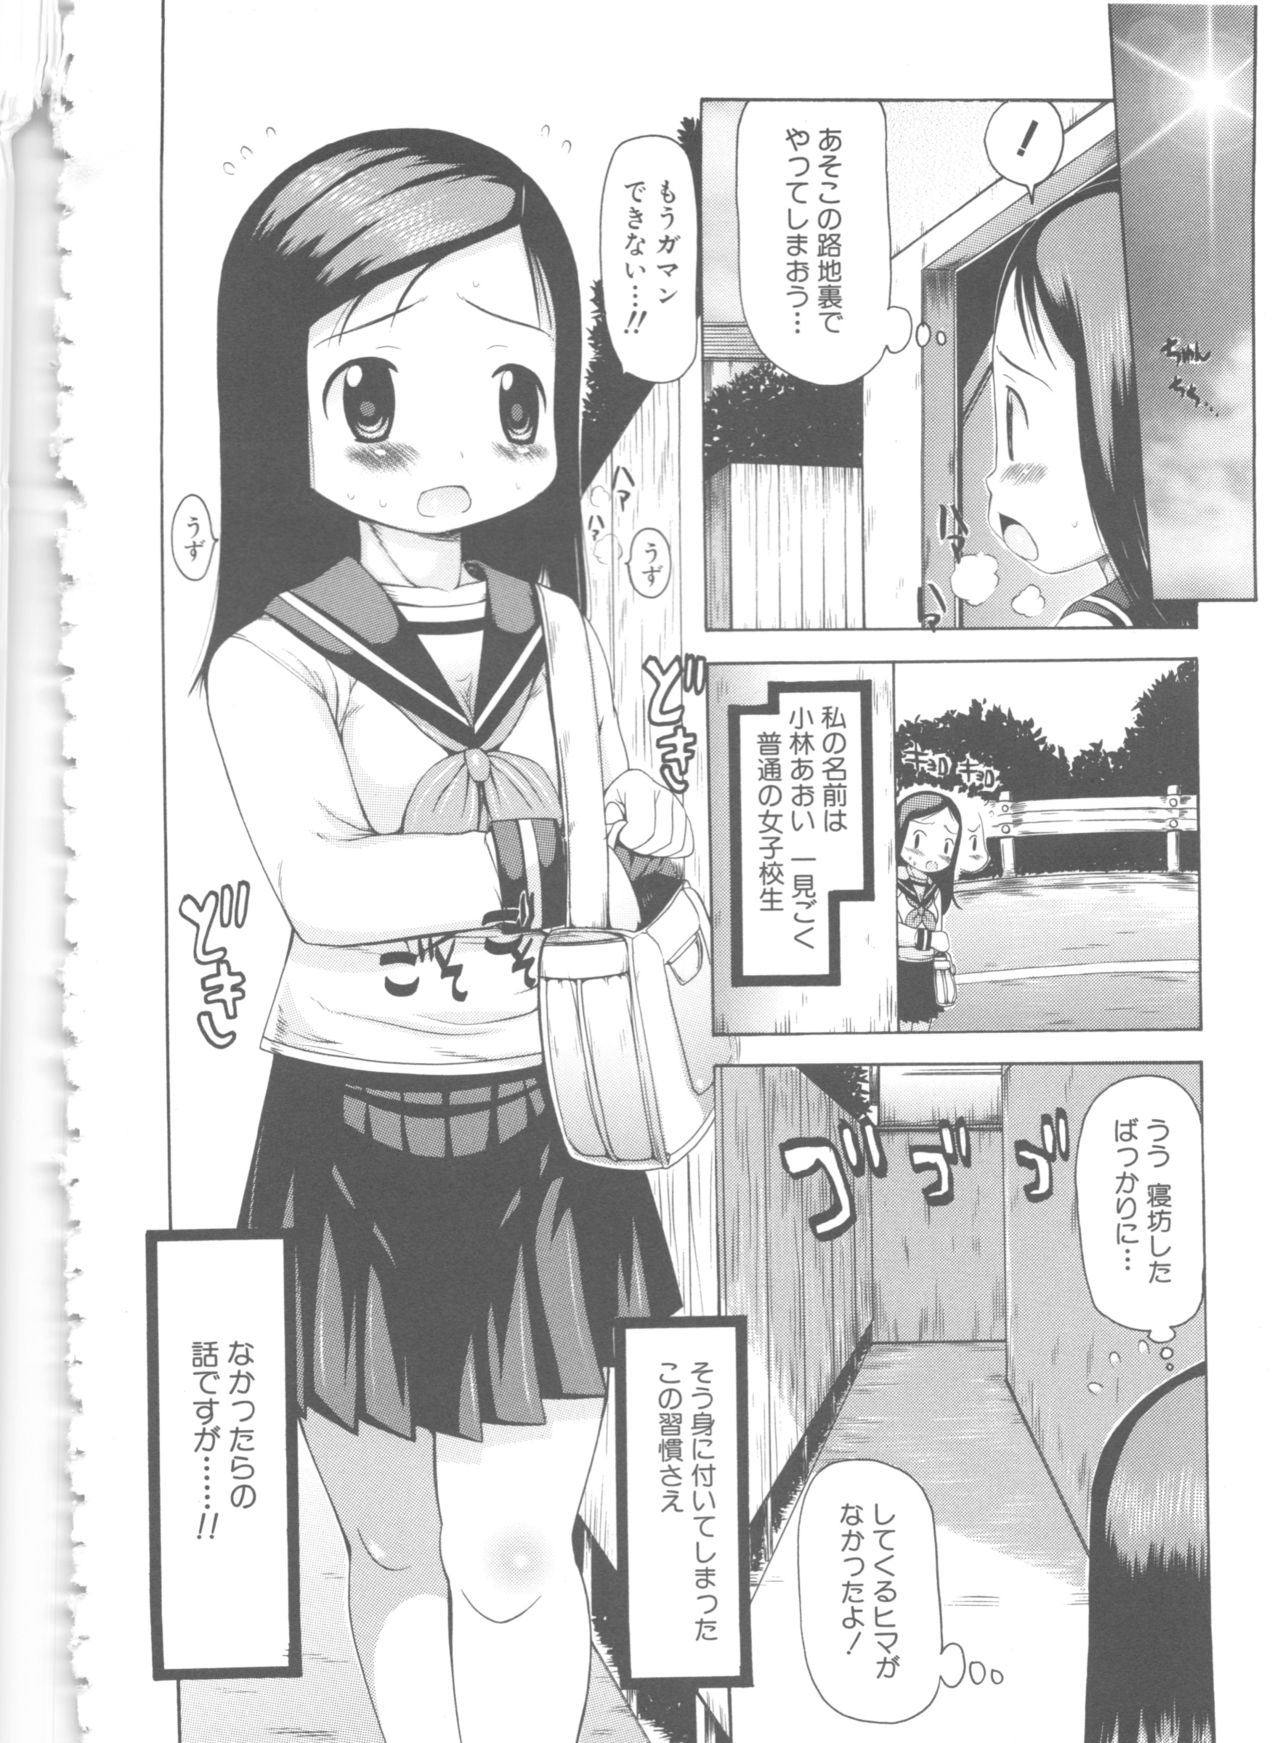 [Anthology] MOMOPAN 6 [Sailor Fuku Chikan] page 45 full